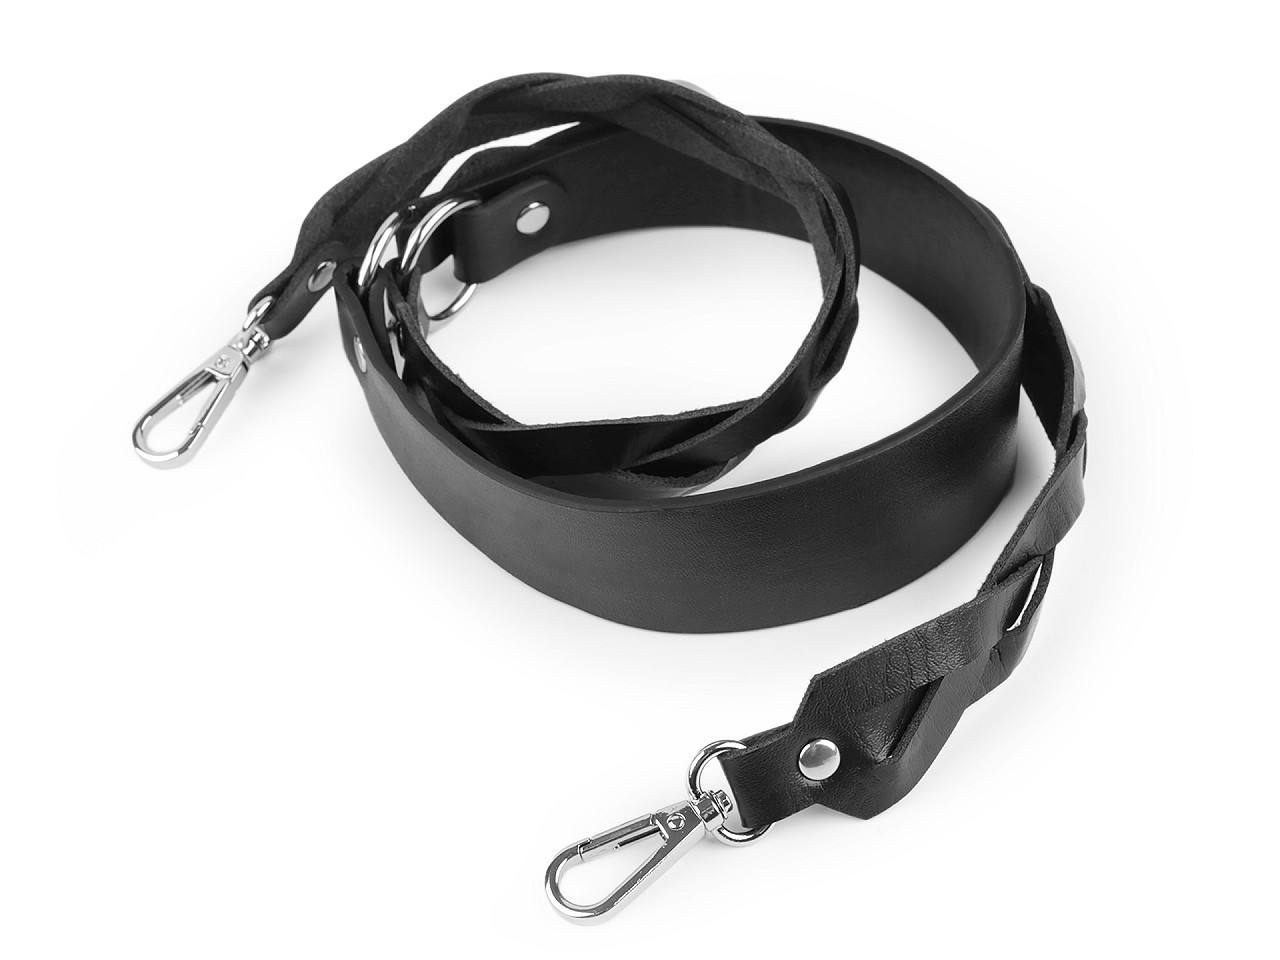 Koženkový popruh / ucho na kabelku s karabinami šíře 2,5-4 cm, barva černá nikl